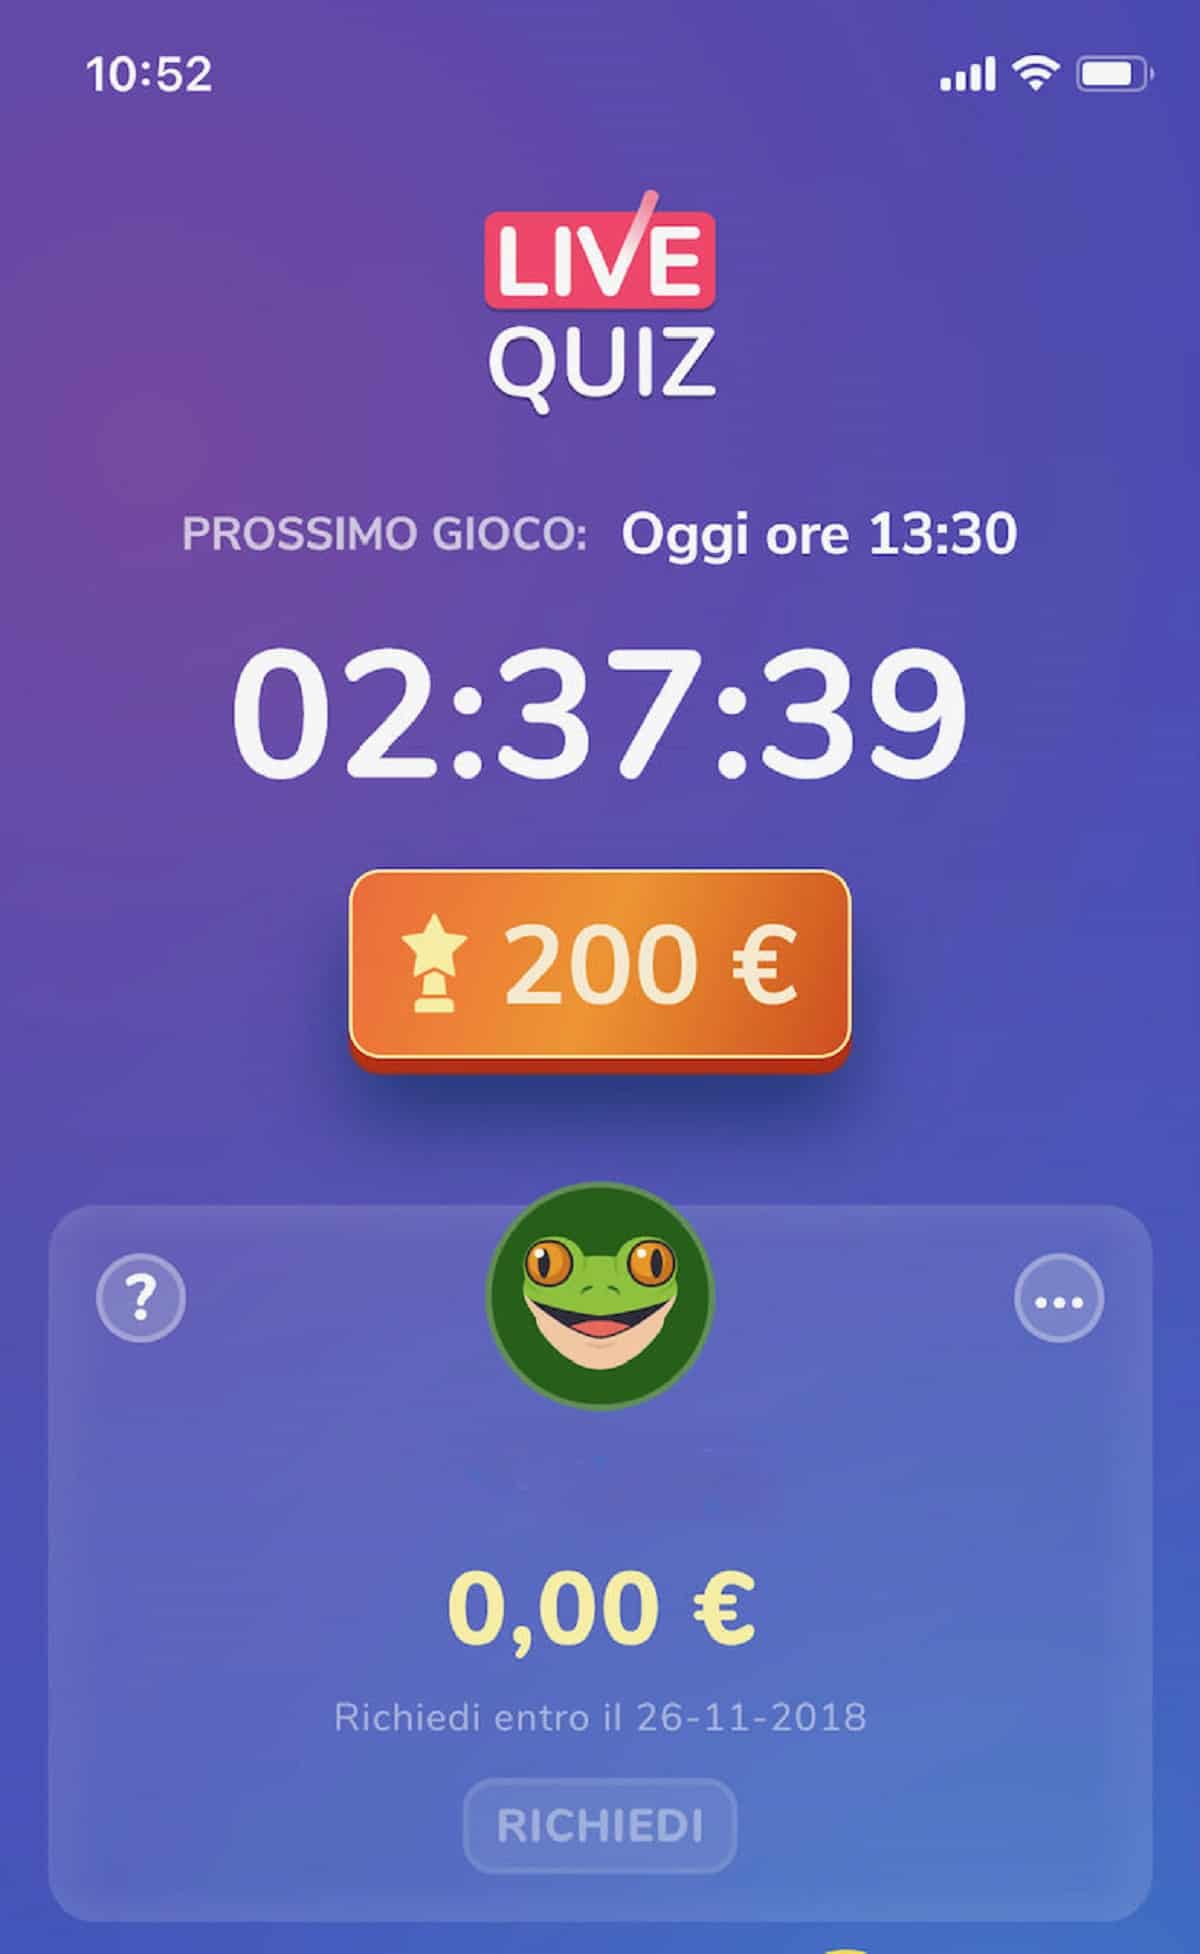 Live Quiz, l’app con quiz e premi in denaro